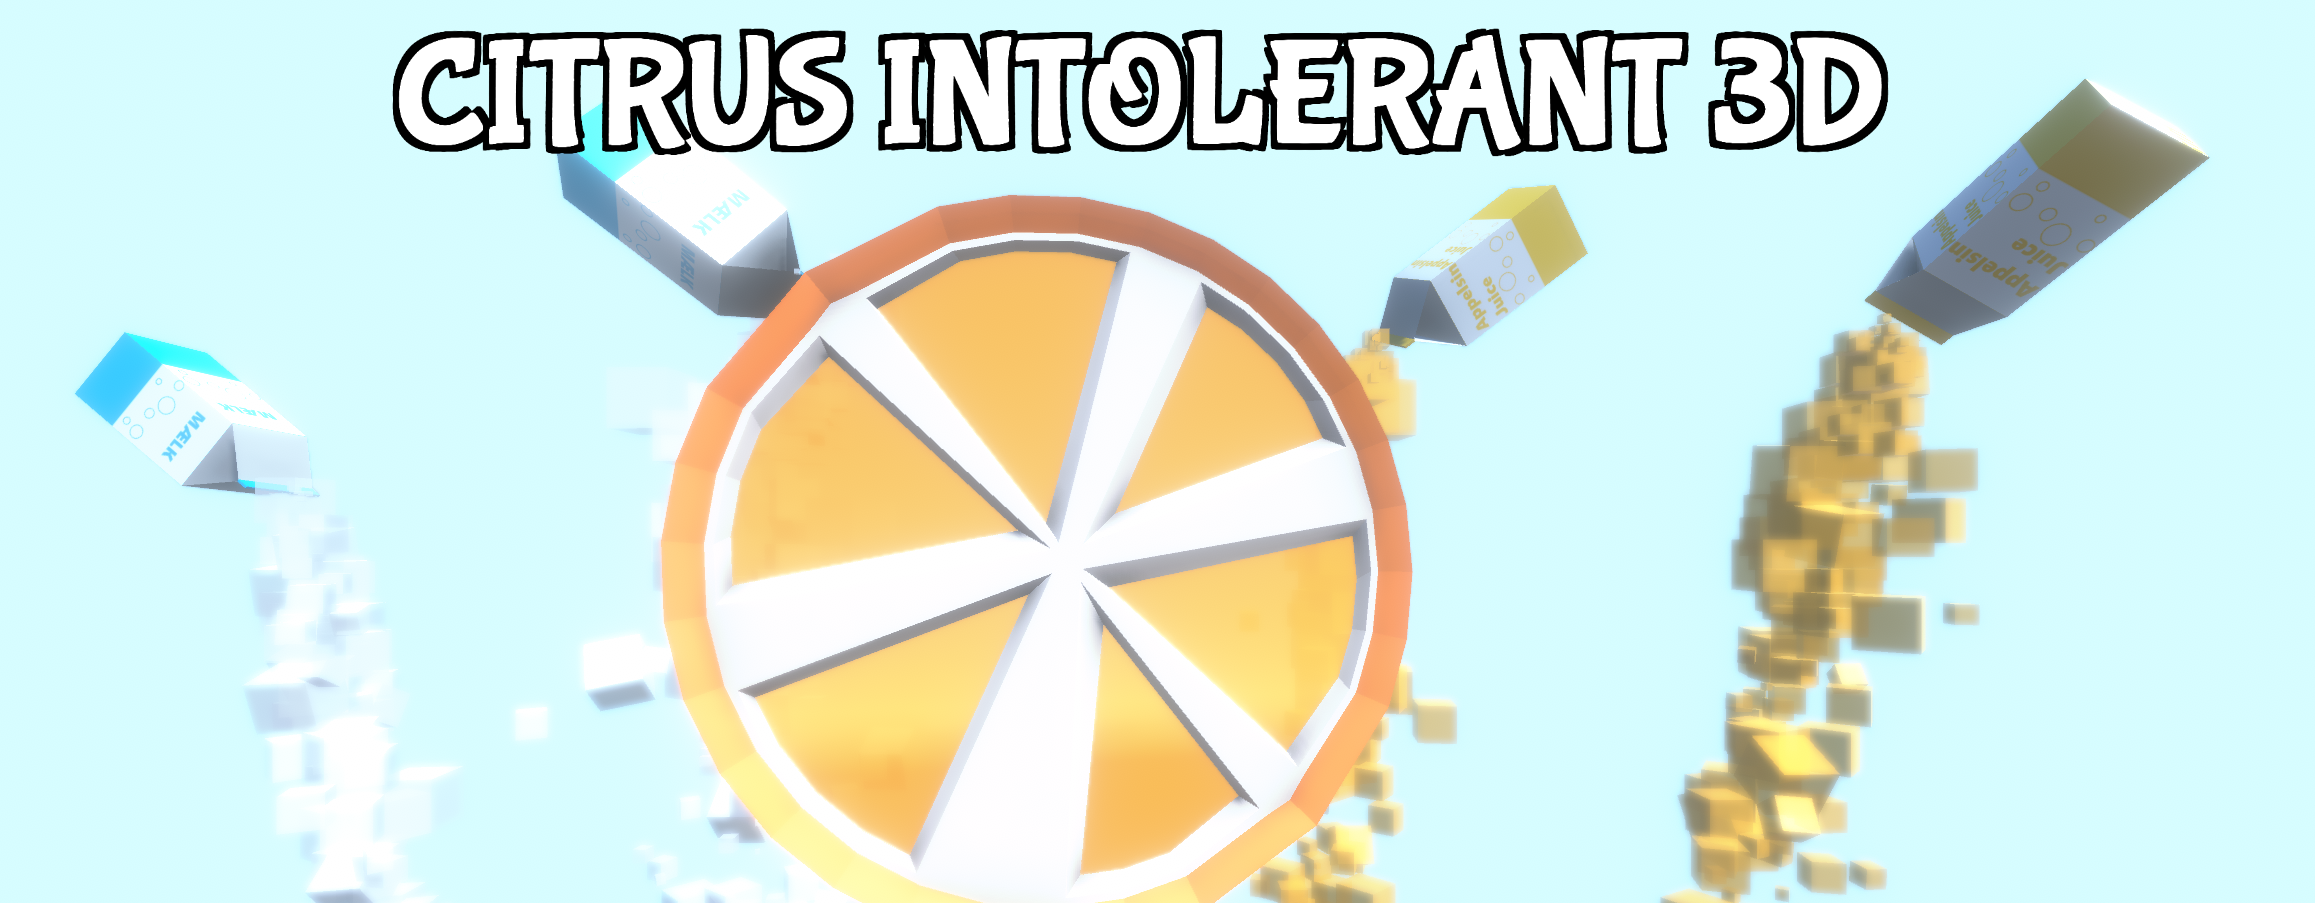 Citrus Intolerant 3D